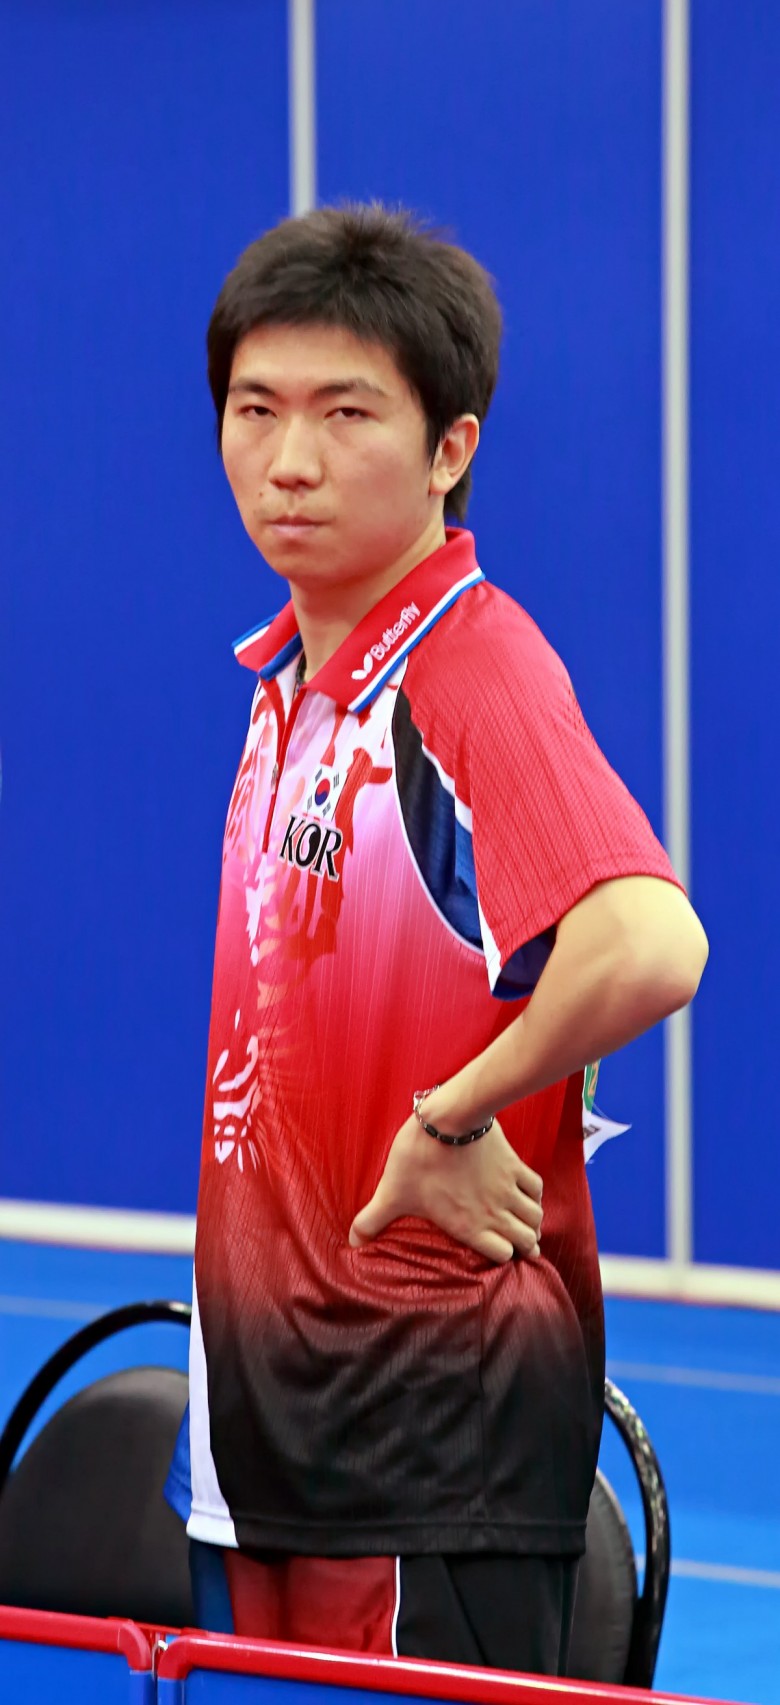 Тяжёлый взгляд олимпийского чемпиона (Рю Сен Мин, Южная Корея). - настольный теннис фото